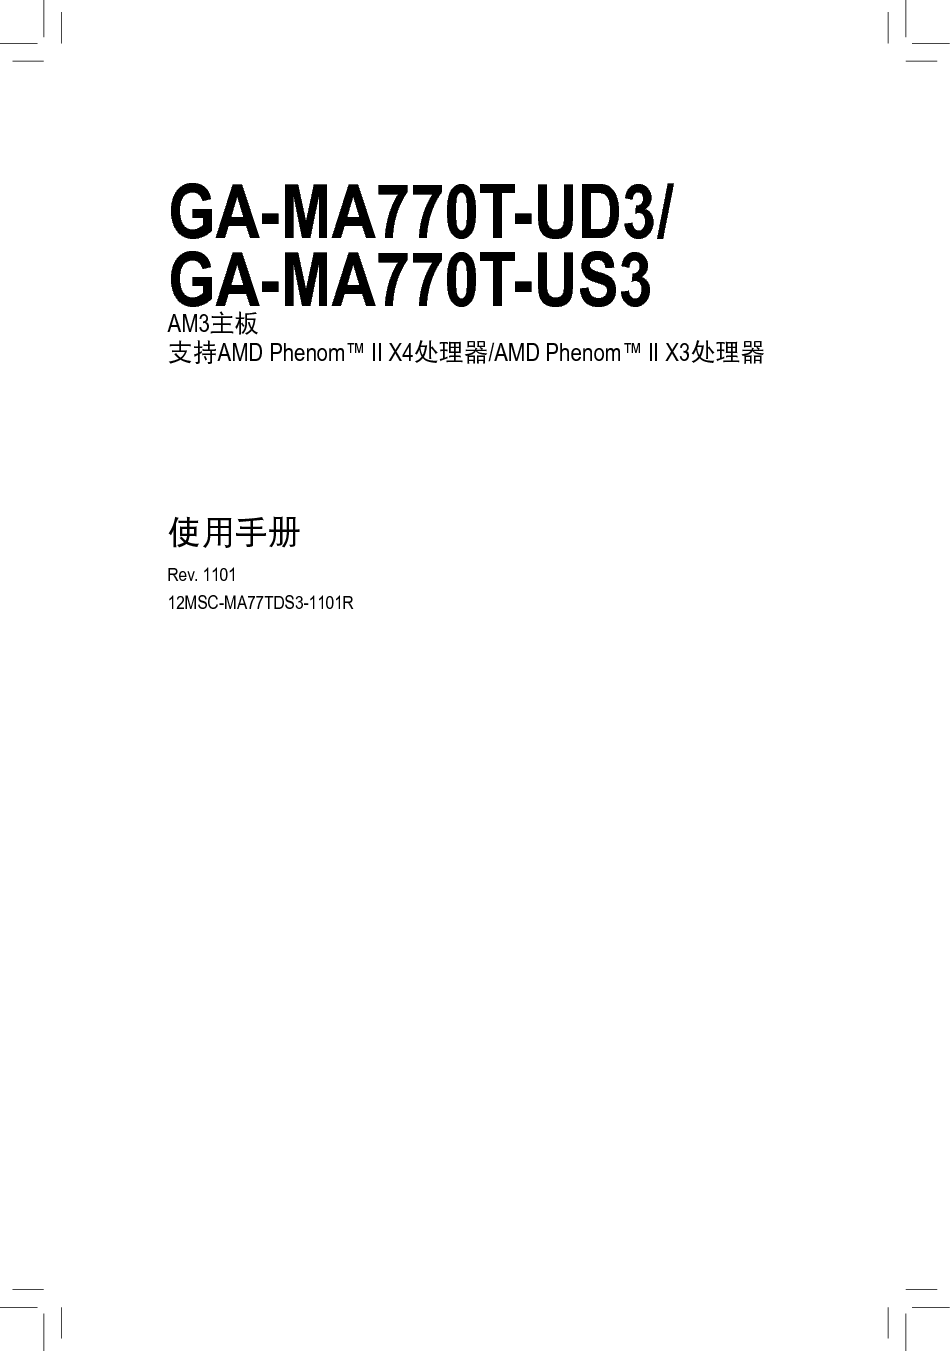 技嘉 Gigabyte GA-MA770T-UD3 1101版 使用手册 封面